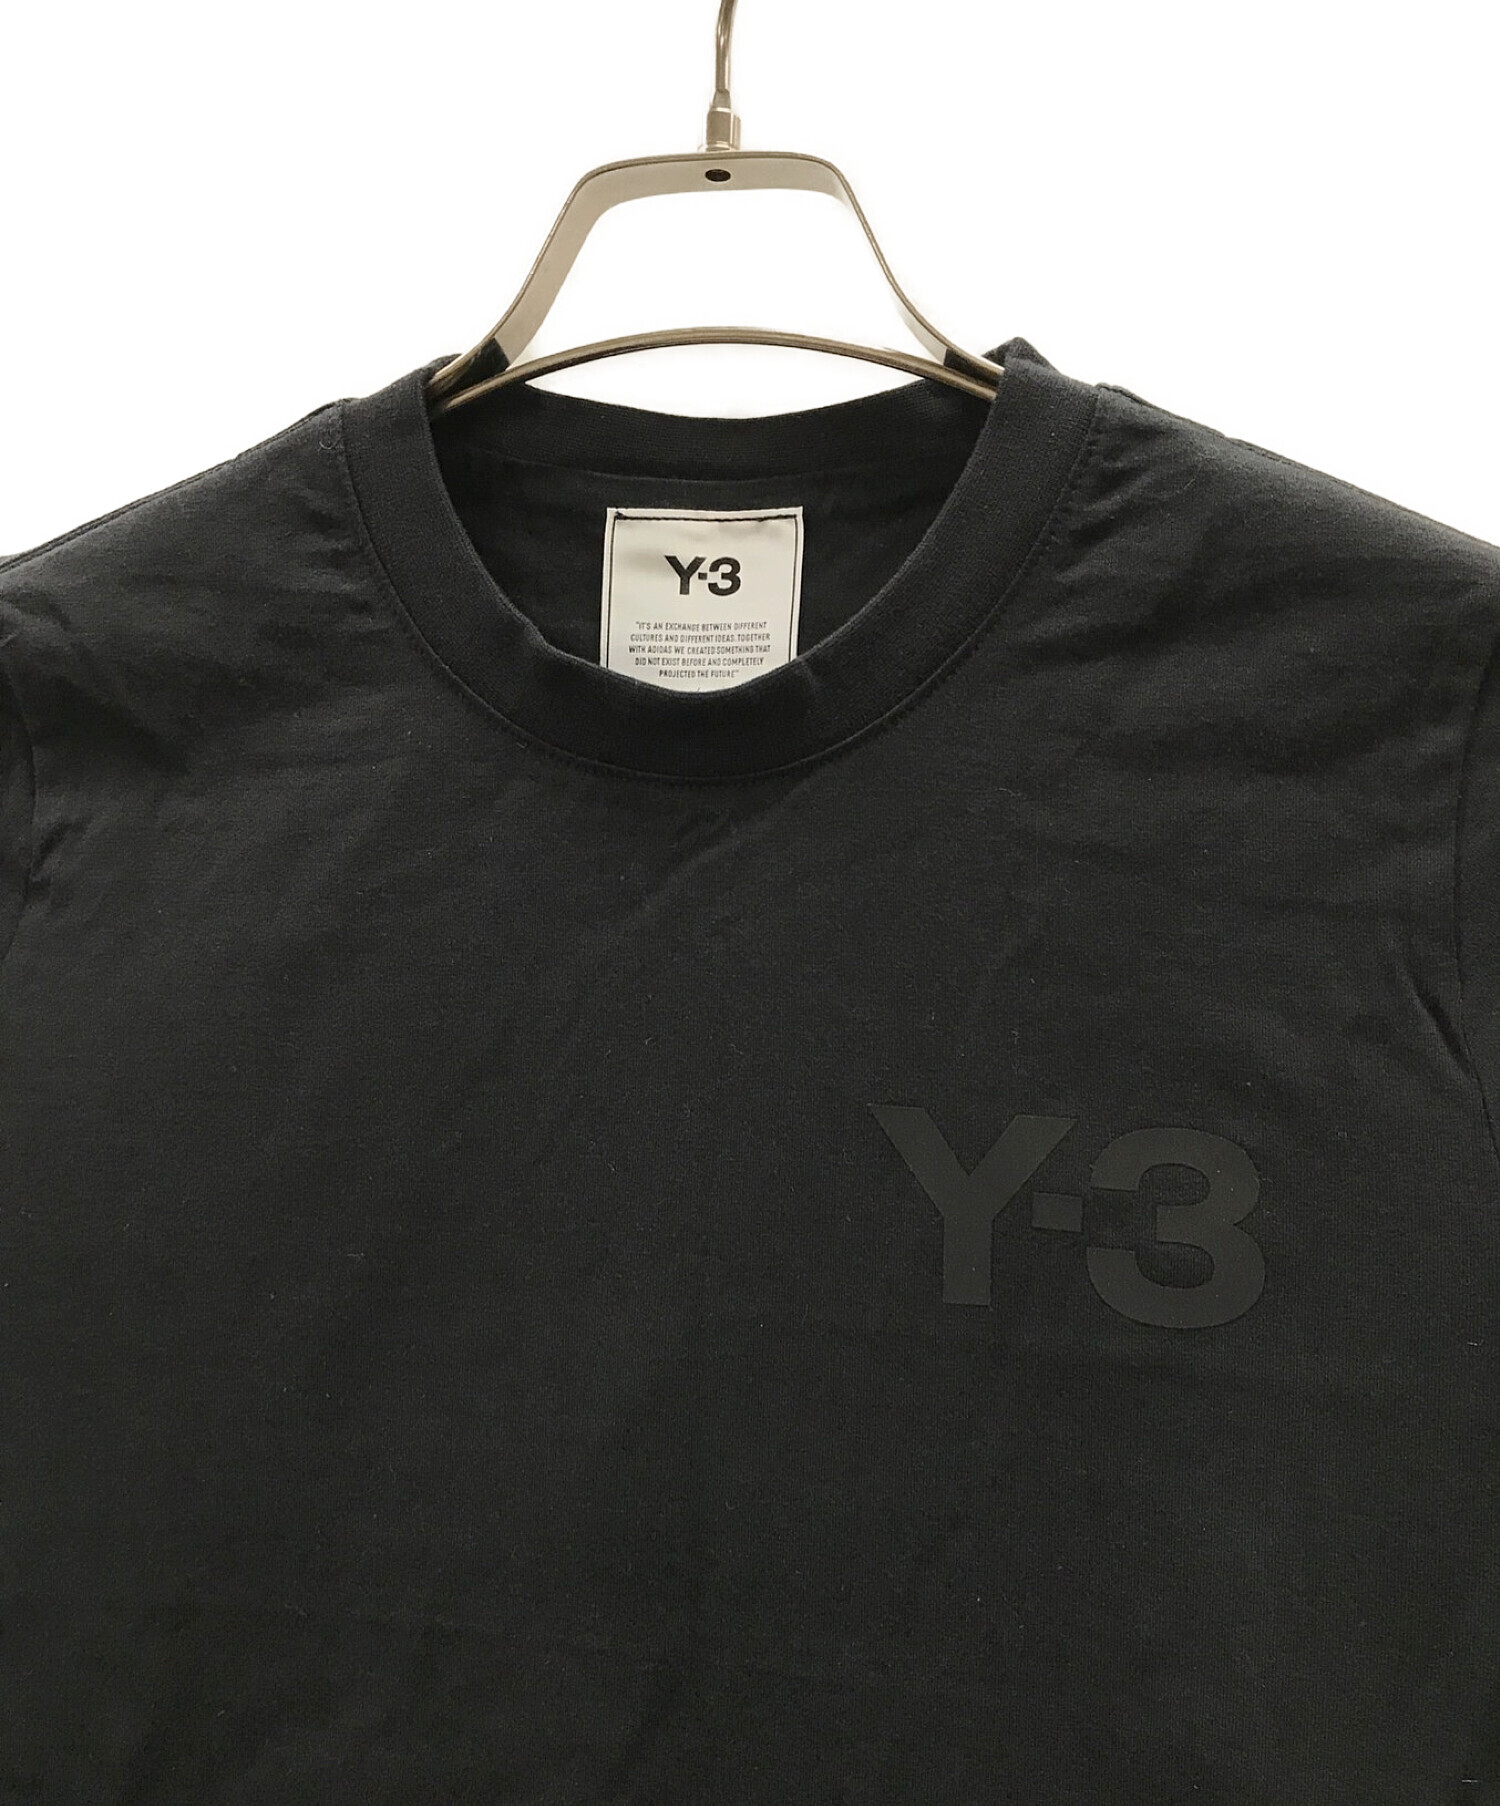 Y-3 (ワイスリー) カットソー ブラック サイズ:L